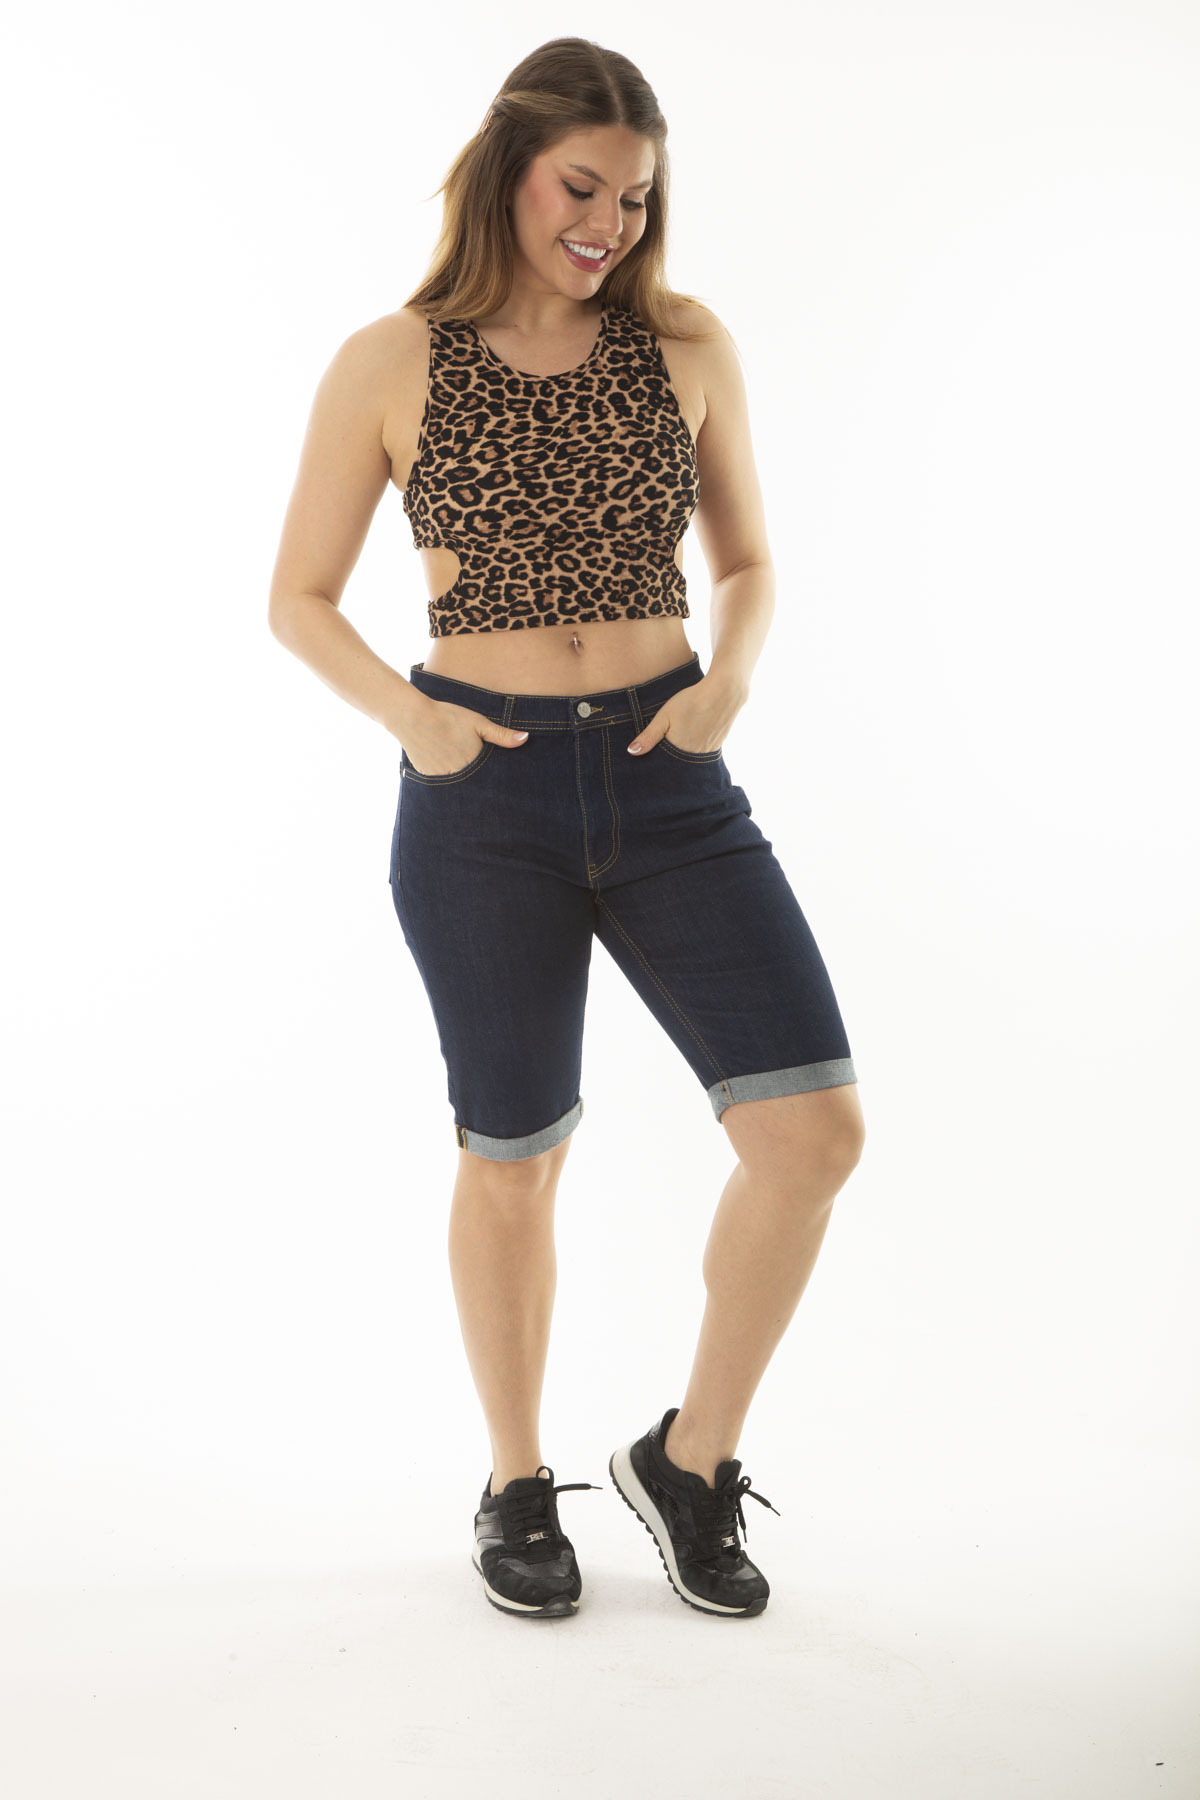 Şans Women's Plus Size Navy Blue 5-Pocket Jeans Shorts with Double Legs